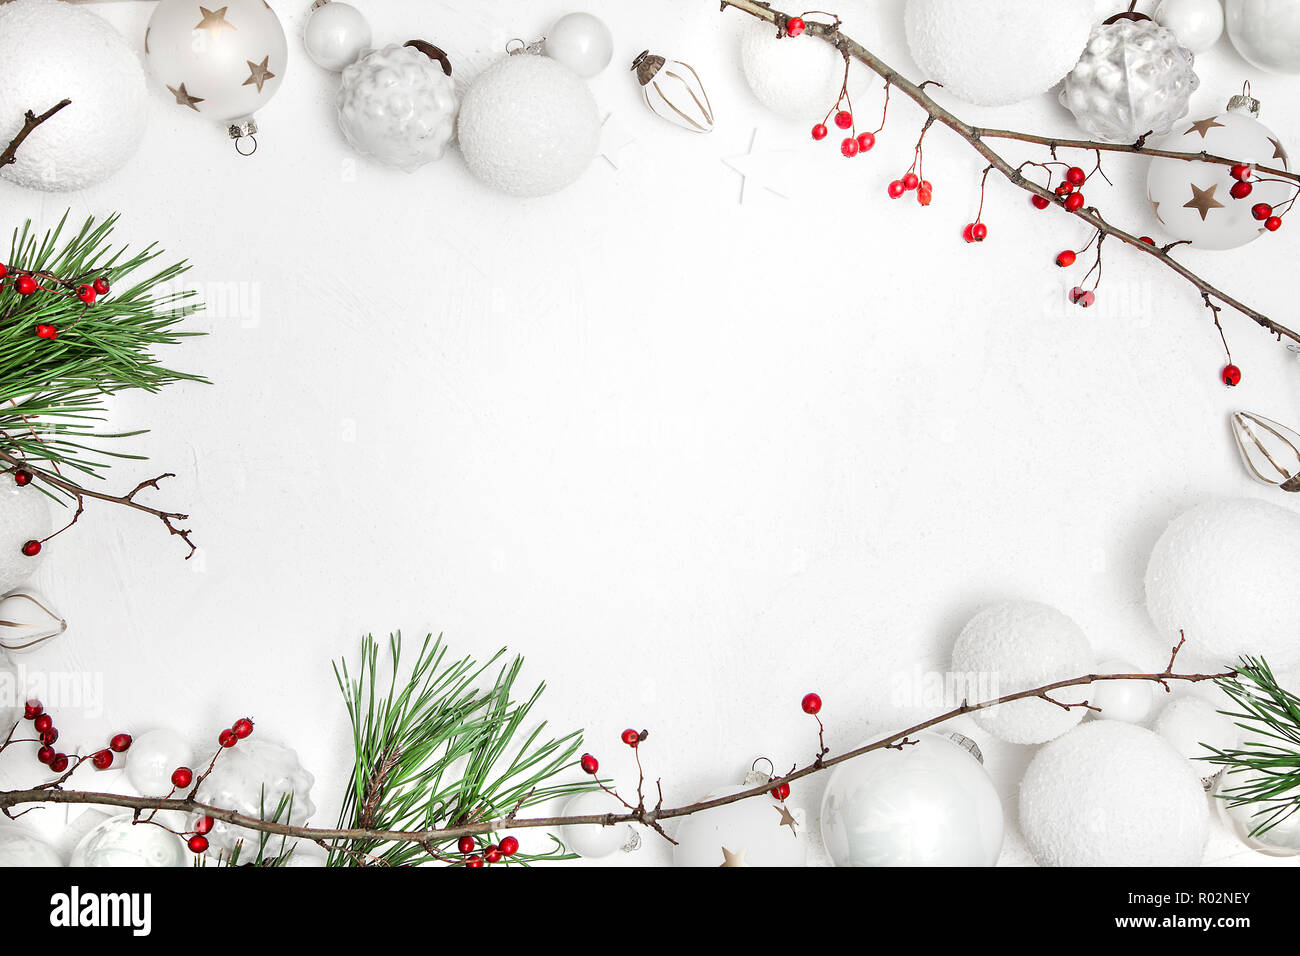 Sfondi Di Natale.Biglietto Di Auguri Di Natale Bianco Sullo Sfondo Di Legno Con Pallina E Bacche Rosse Foto Stock Alamy